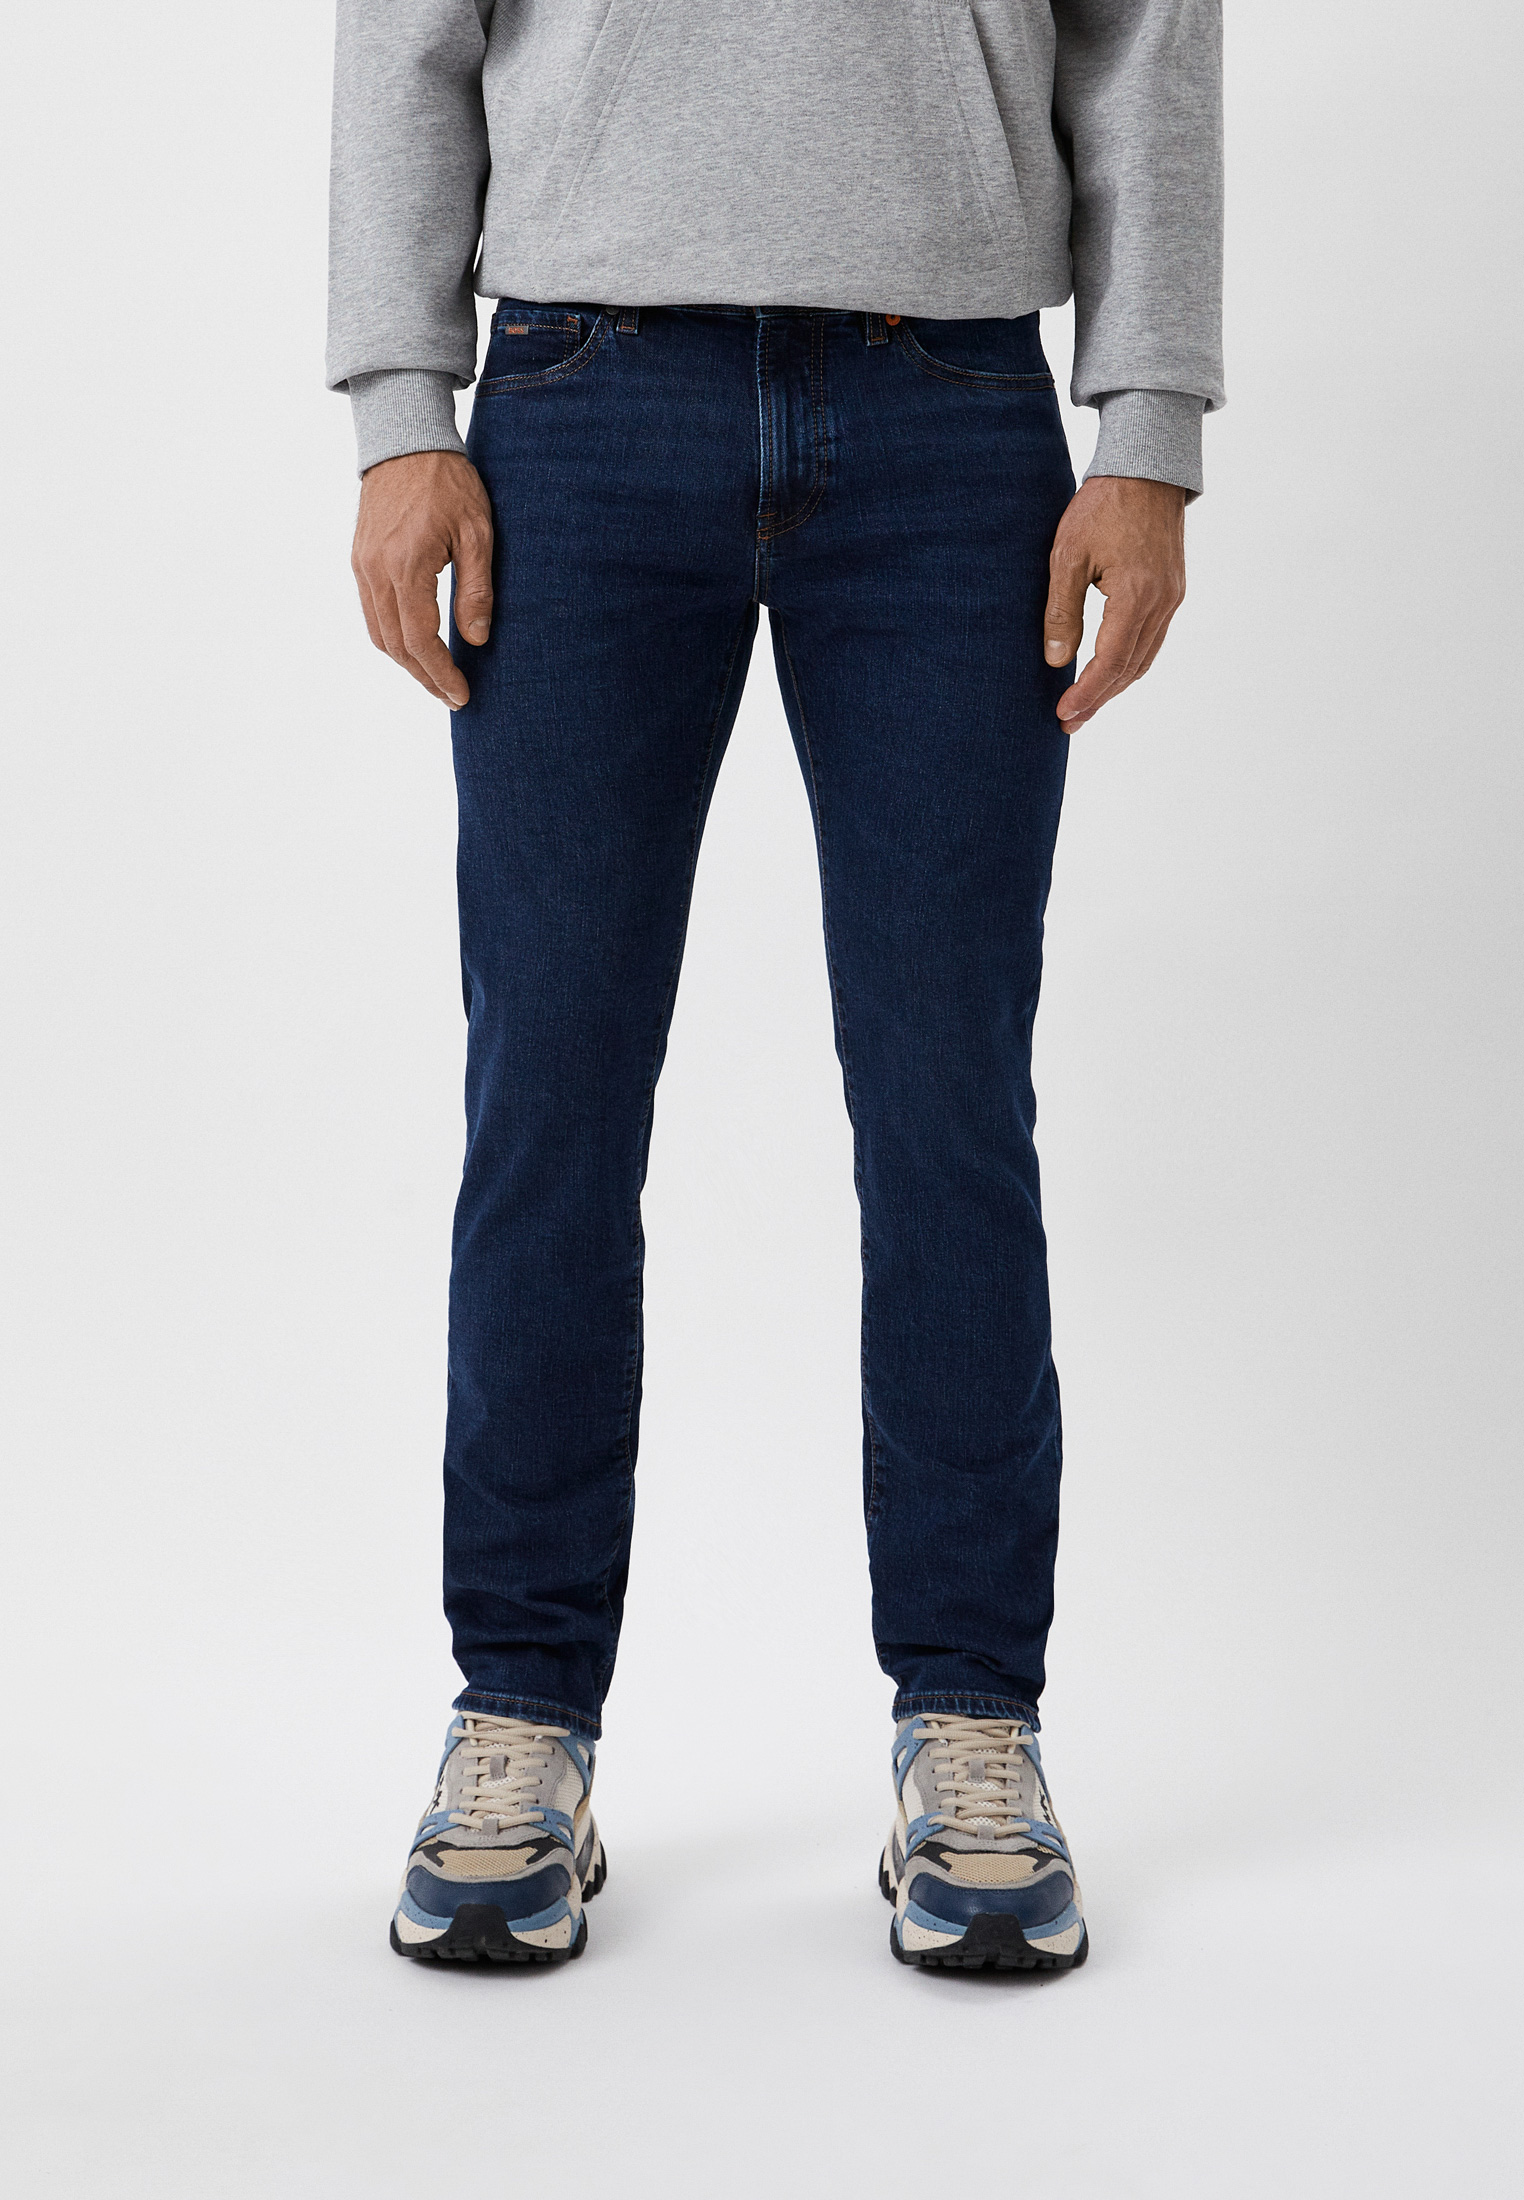 Мужские прямые джинсы Boss (Босс) 50484968: изображение 1